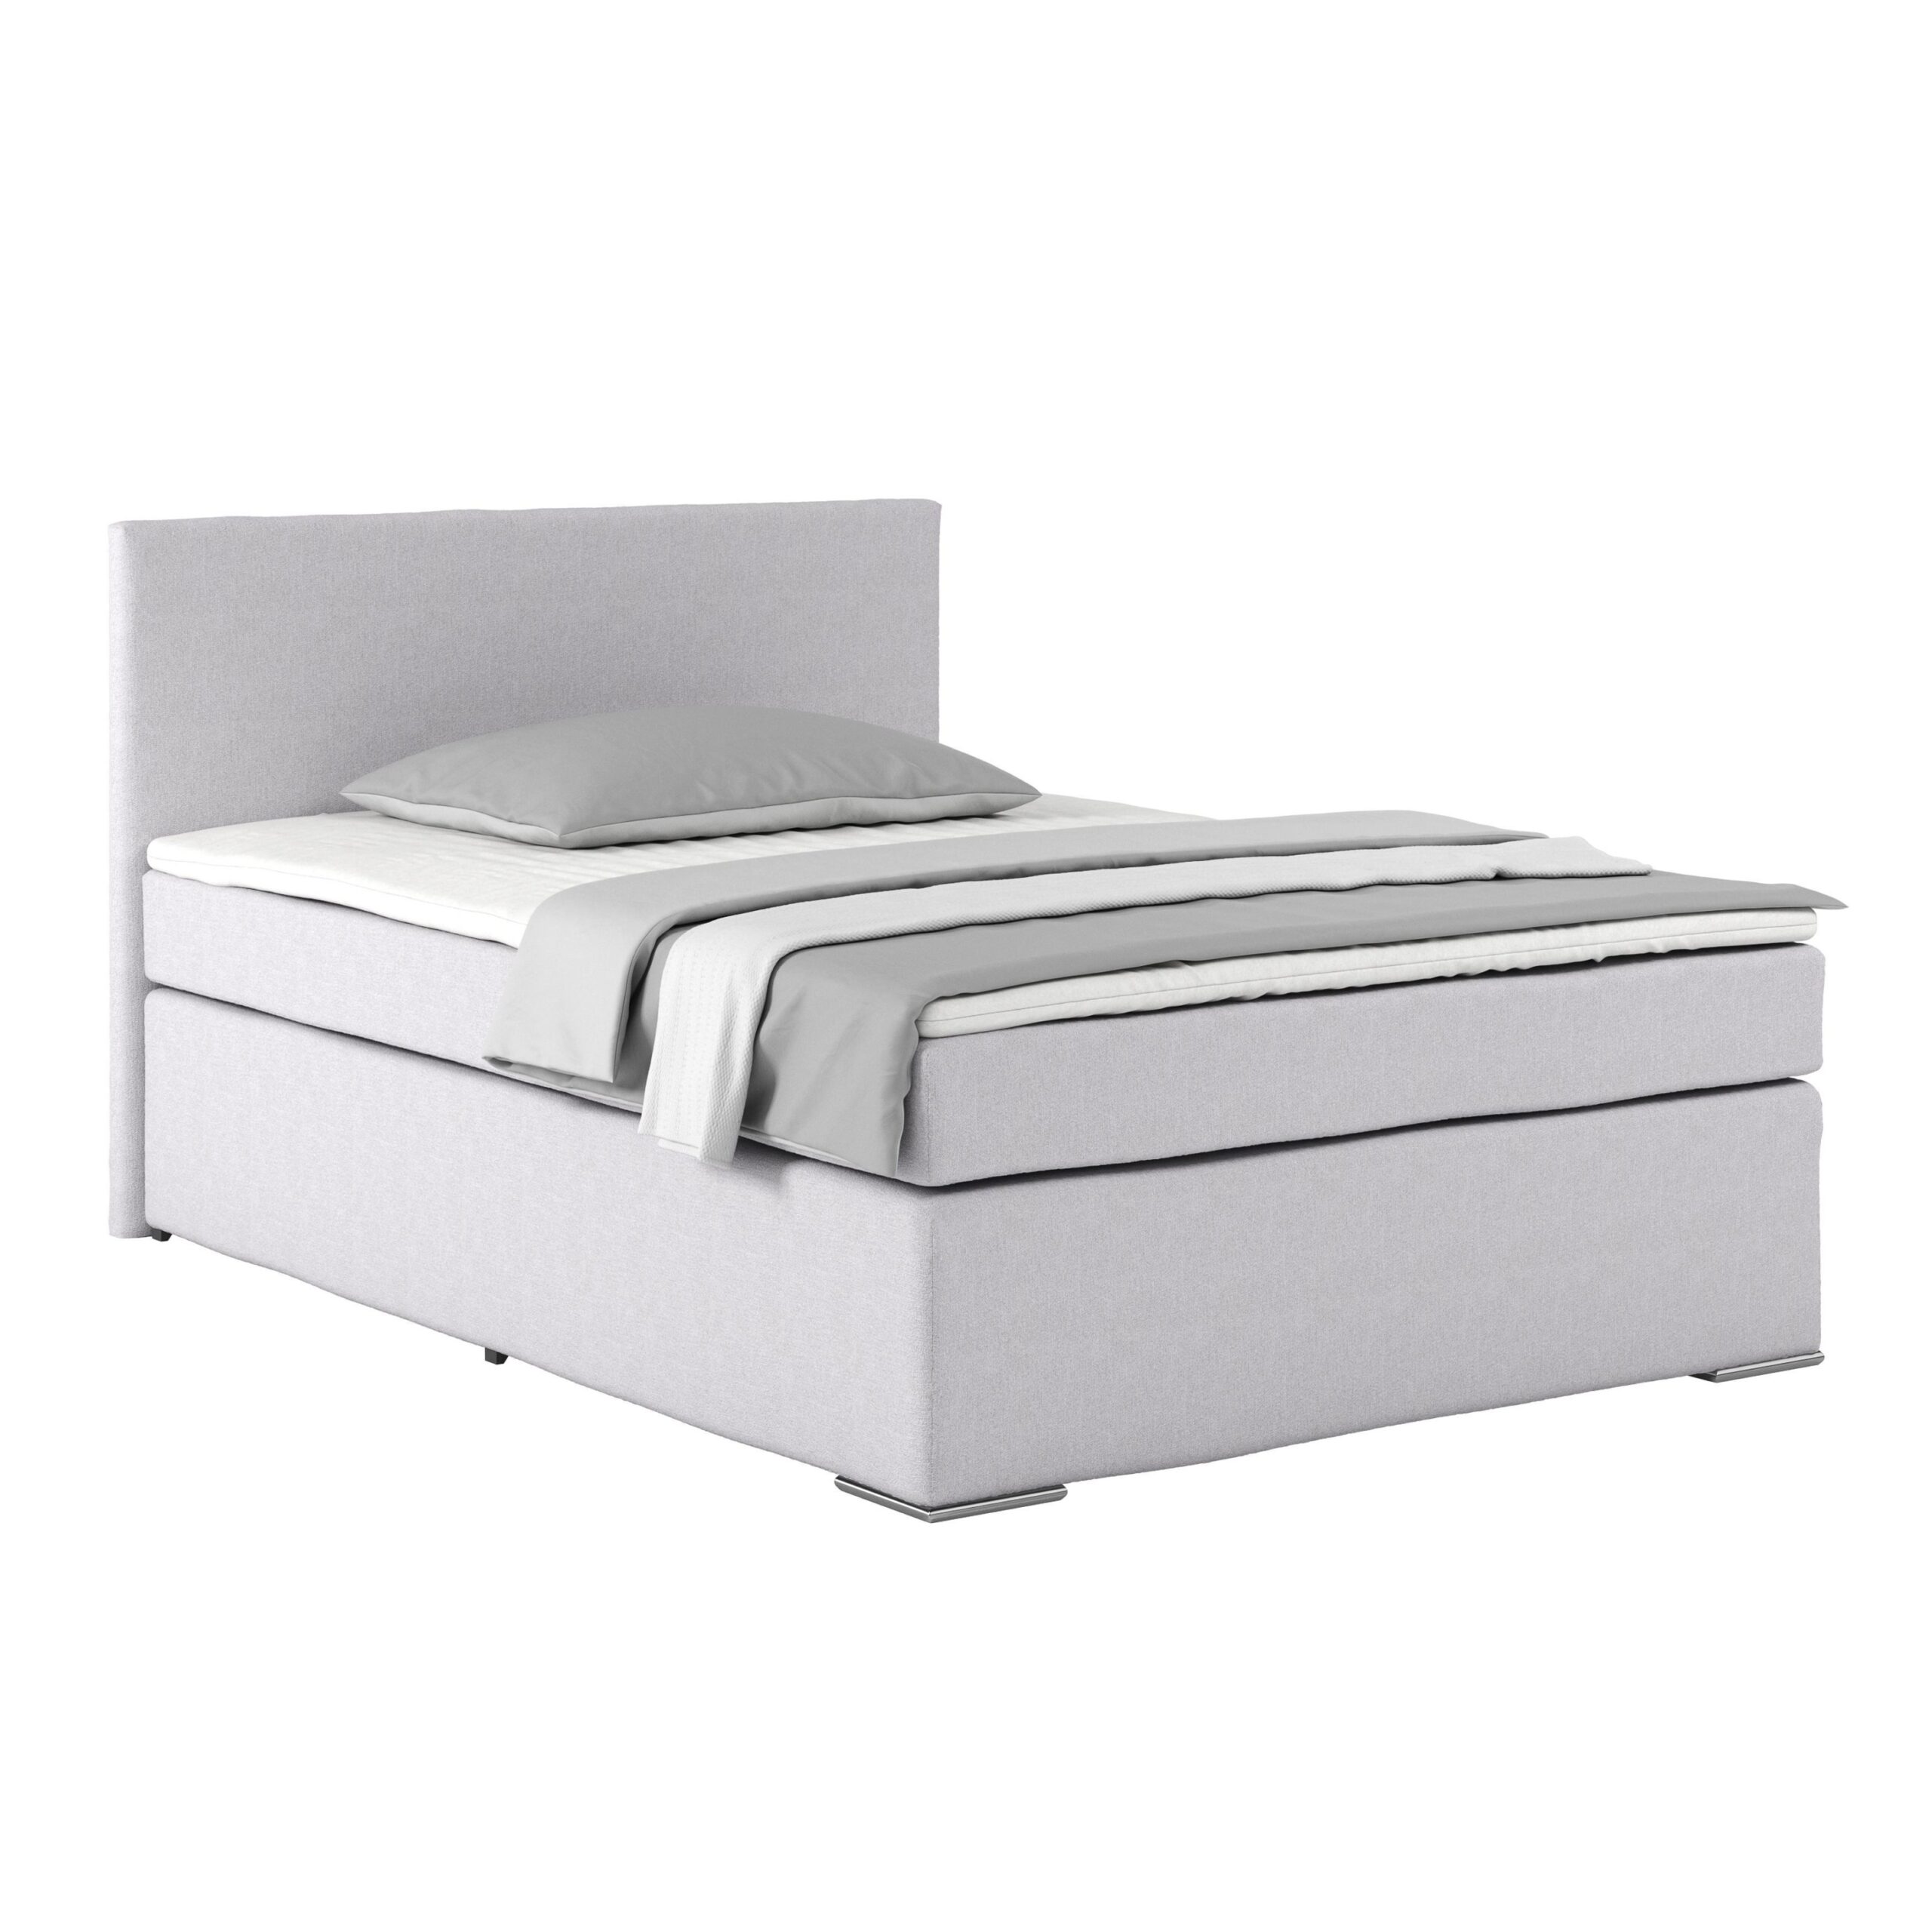 Modernes Boxspringbett 140×200 In Strahlendem Weiß: Die Perfekte Ergänzung Für Dein Stilvolles Schlafzimmer